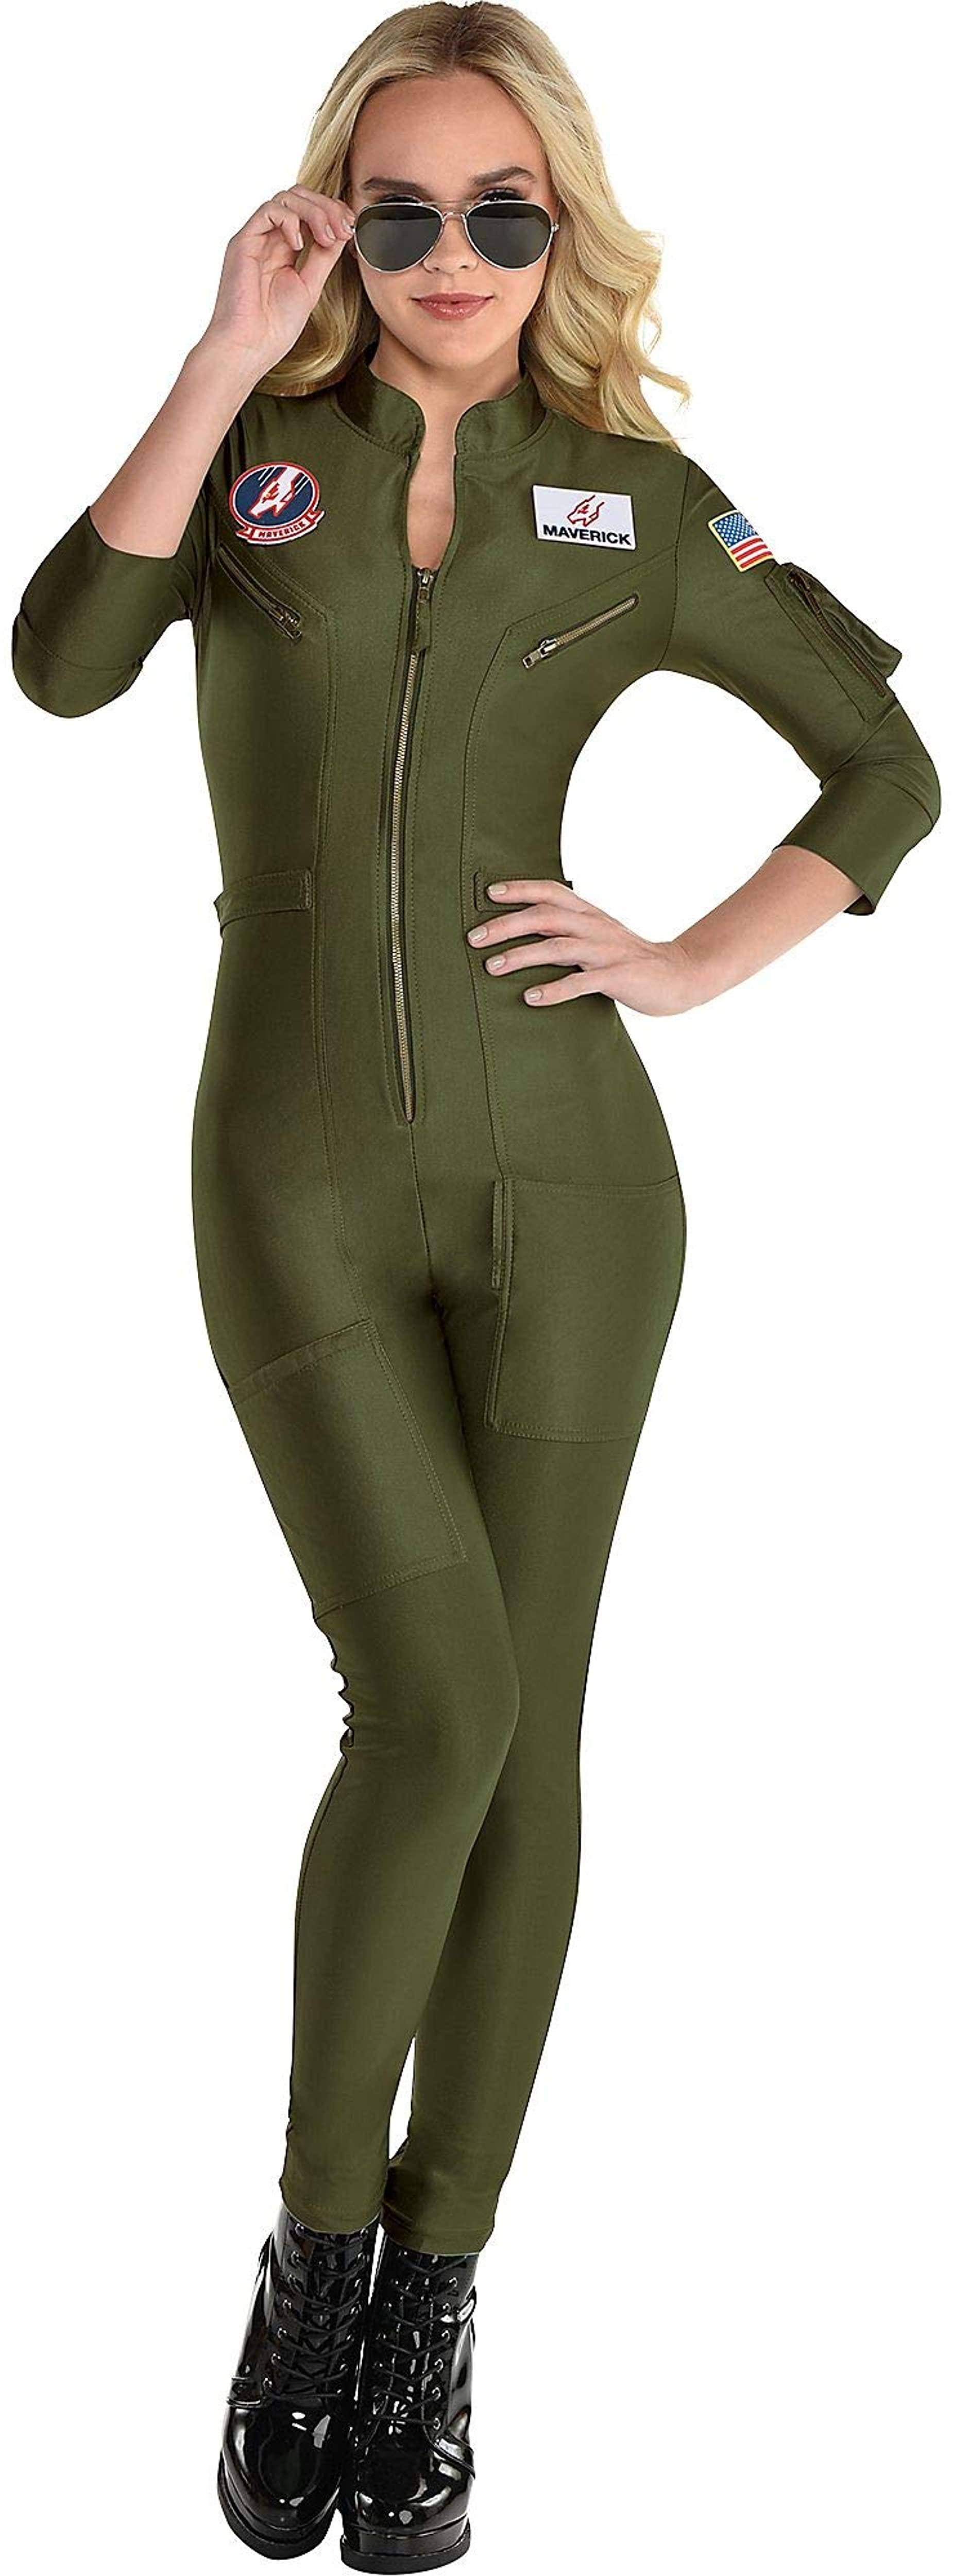 Adult Women's Top Gun Maverick: Flight Suit Halloween Costume S